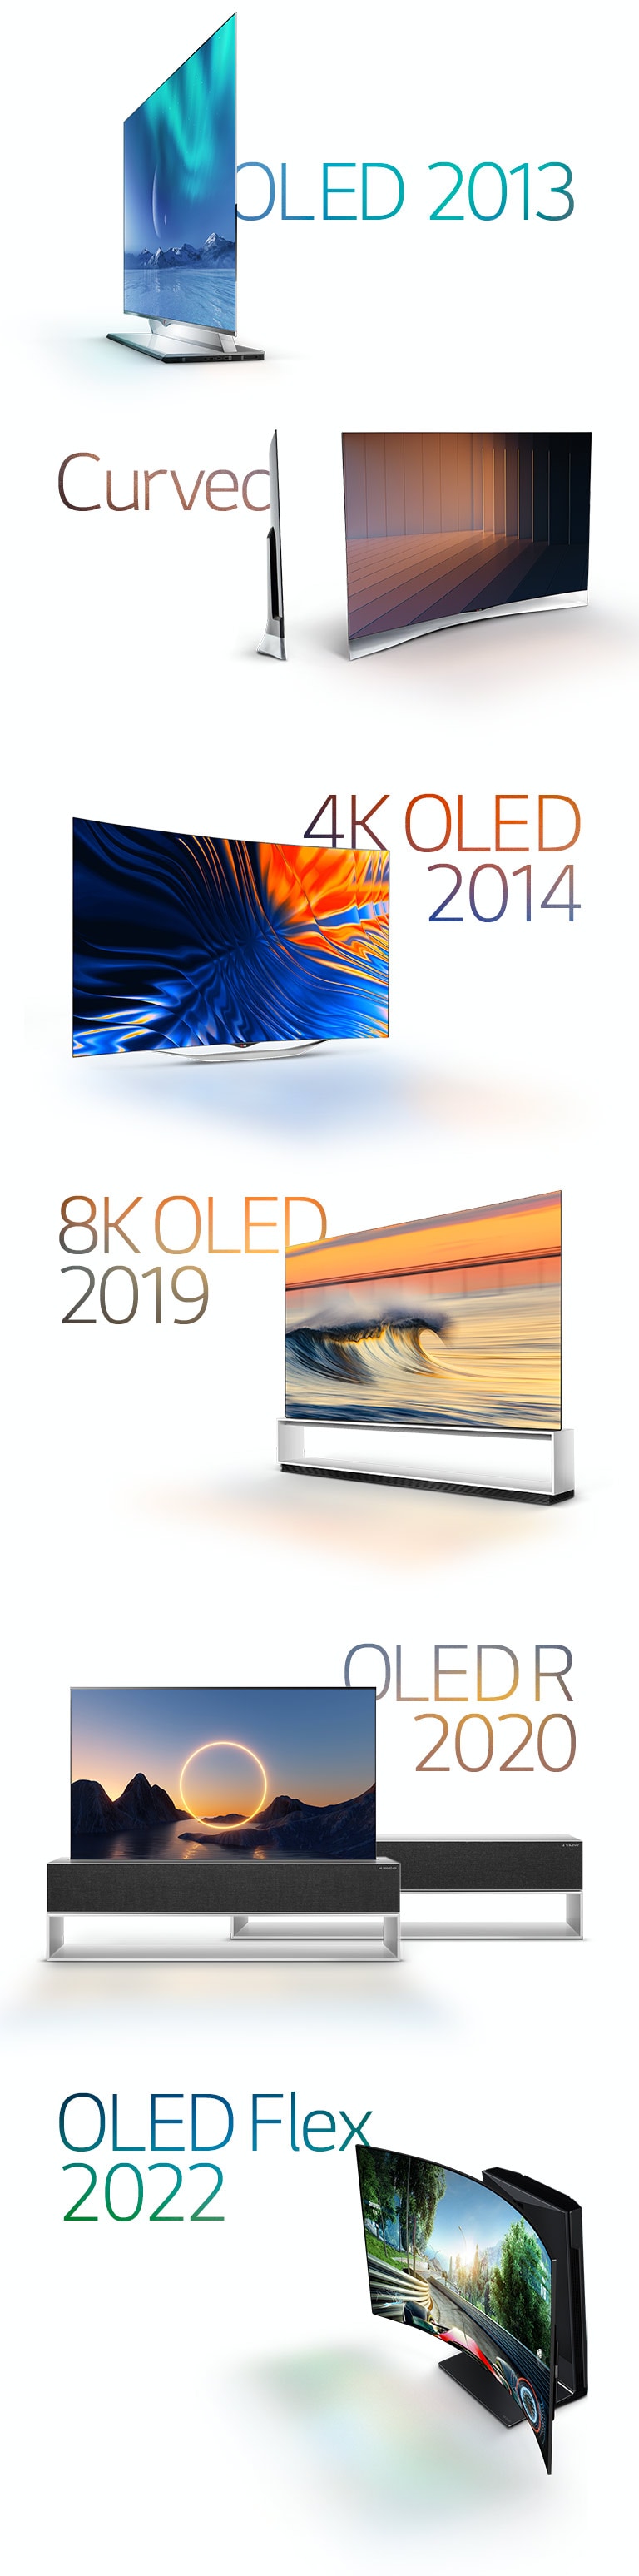 Imágenes de los LG OLED más destacados: El OLED curvo de 2013, el OLED 4K de 2014, el OLED 8K de 2019, el OLED enrollable de 2020 y el LG OLED Flex de 2022.